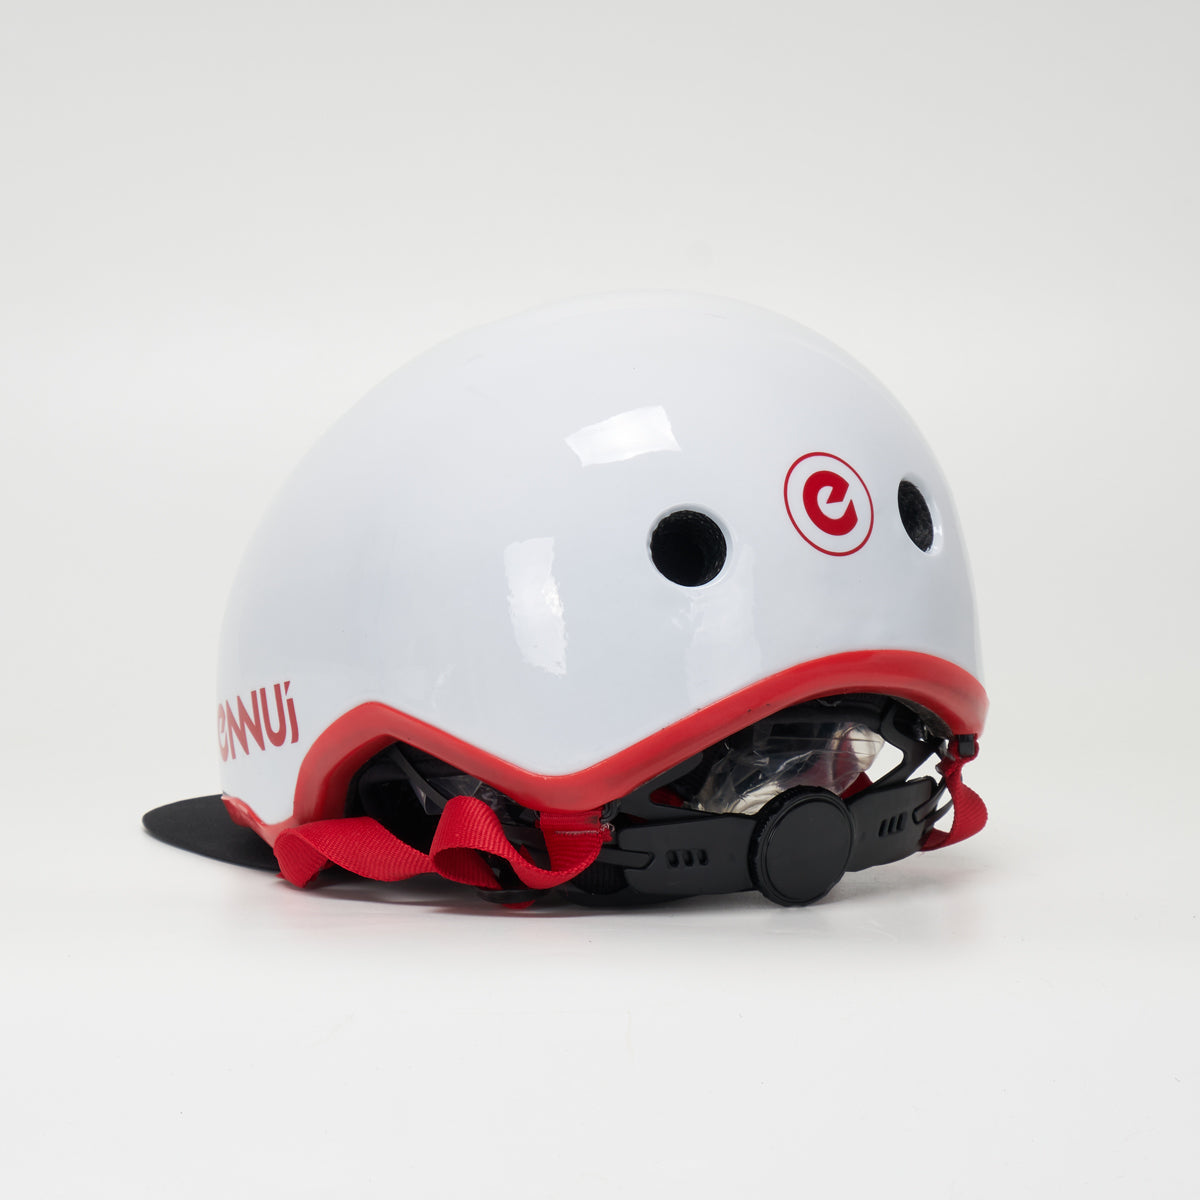 Ennui Elite Helmet - White/Red